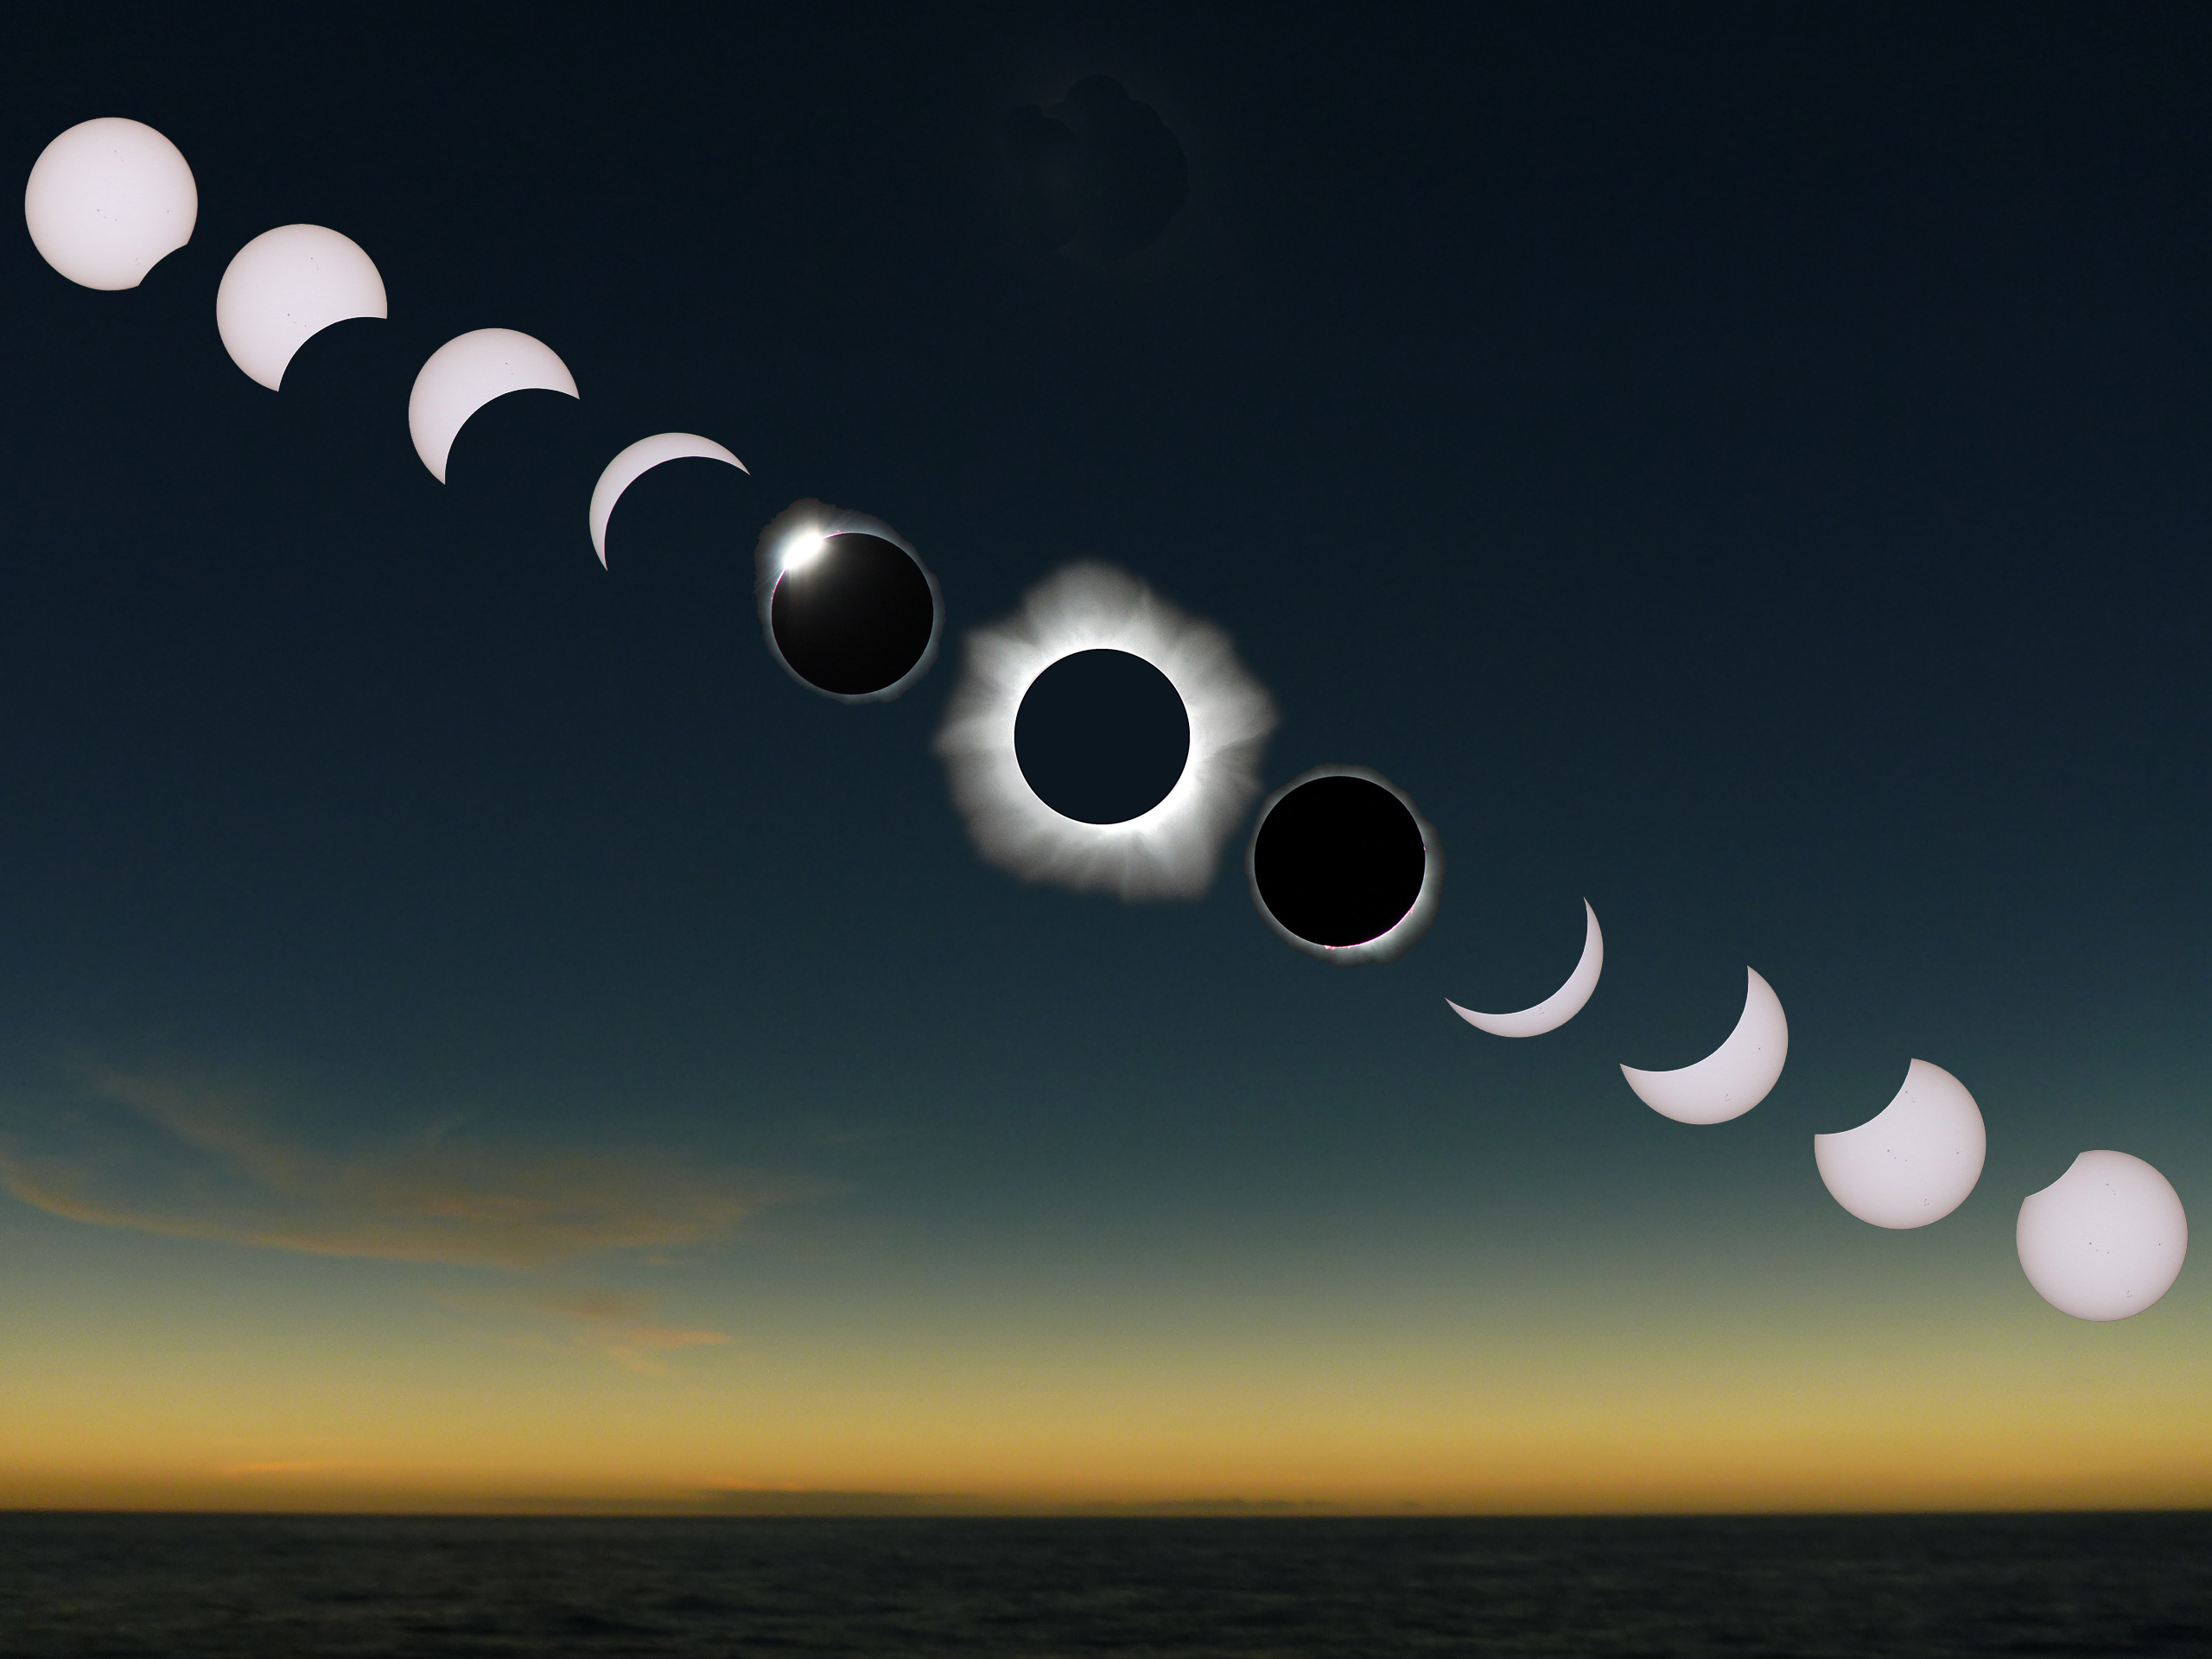 solar eclipse images